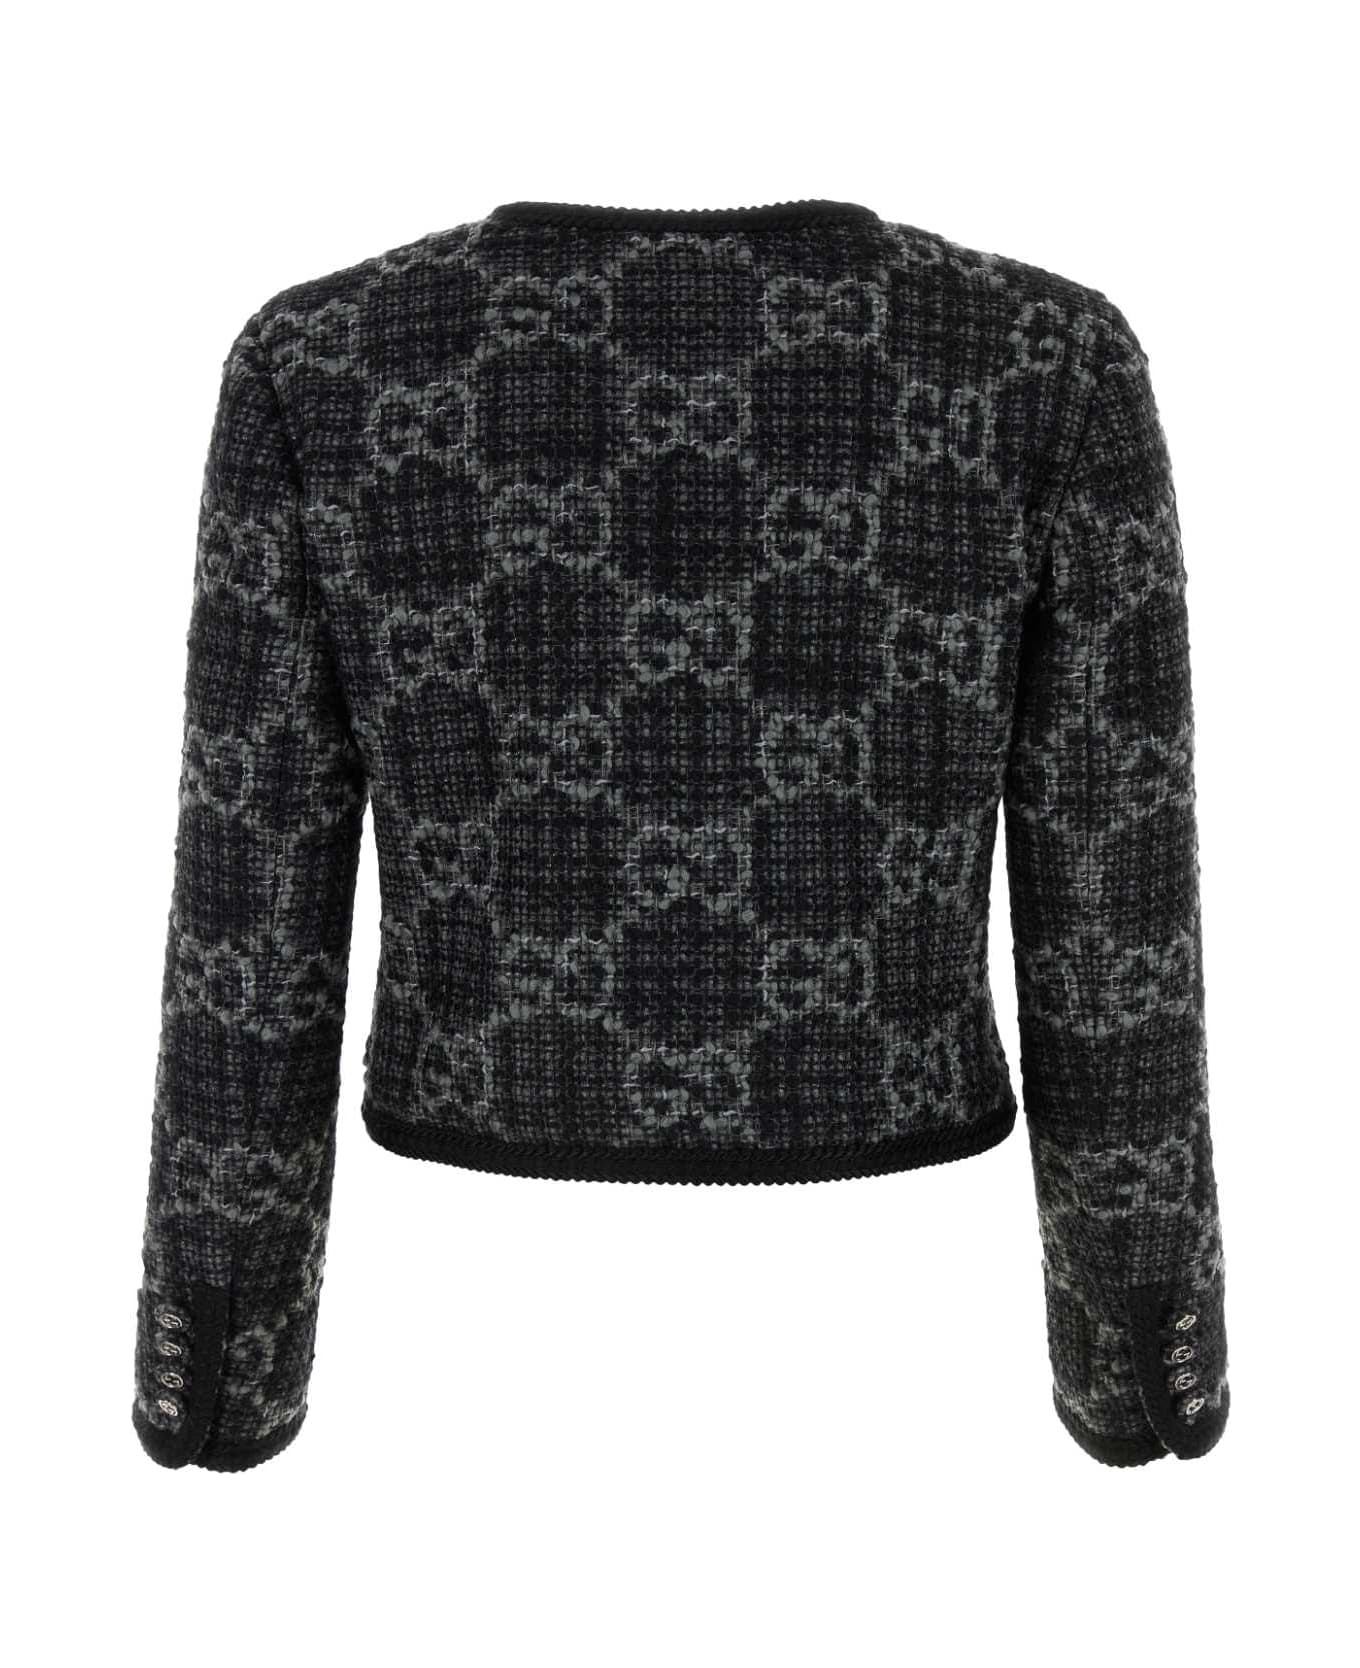 Gucci Embroidered Tweed Blazer - DARKGREYGREYMIX